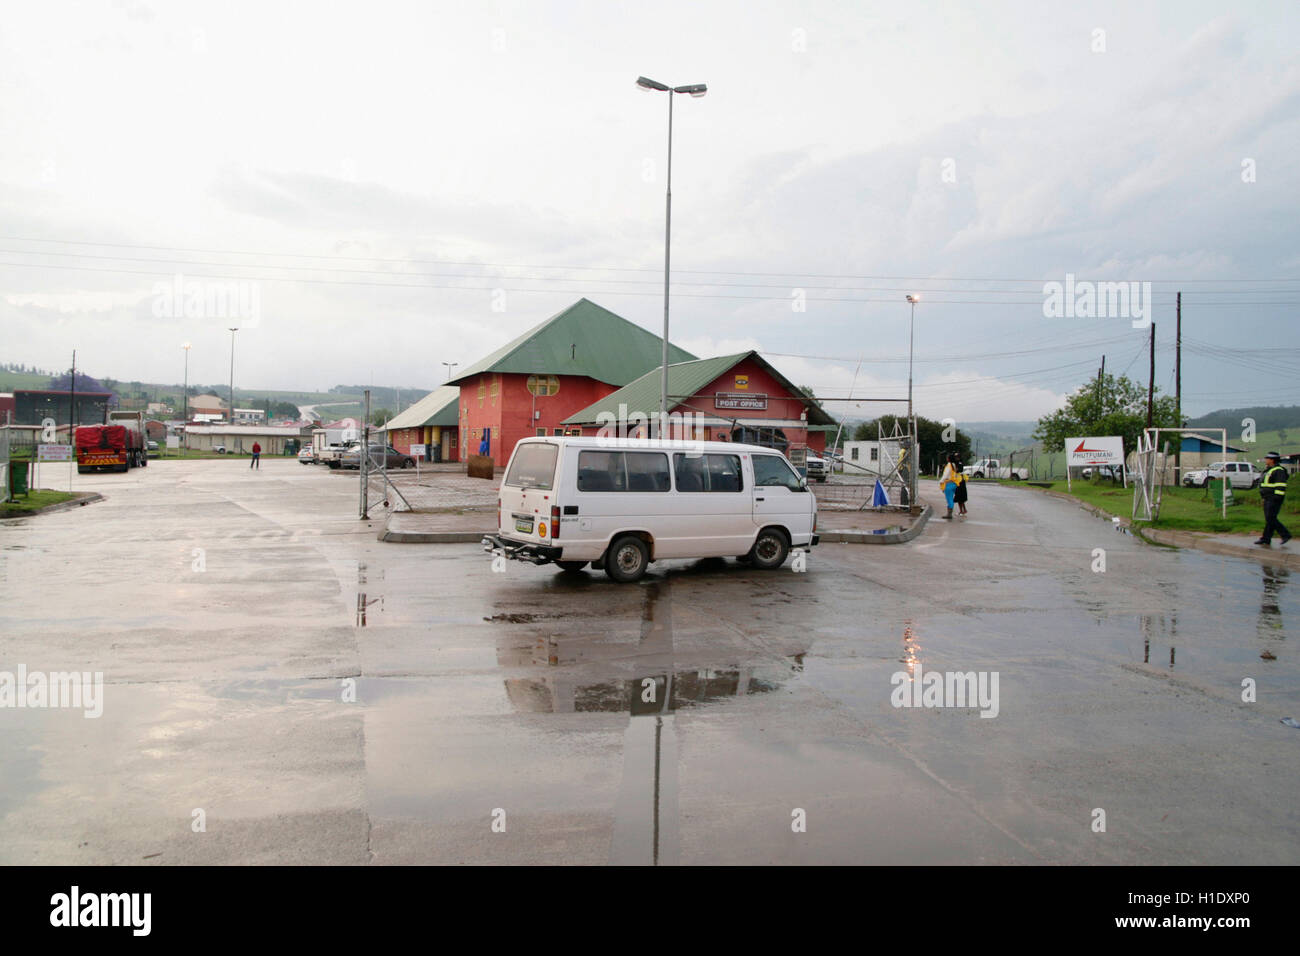 Minibus at Oshoek border, Kingdom of Swaziland Stock Photo